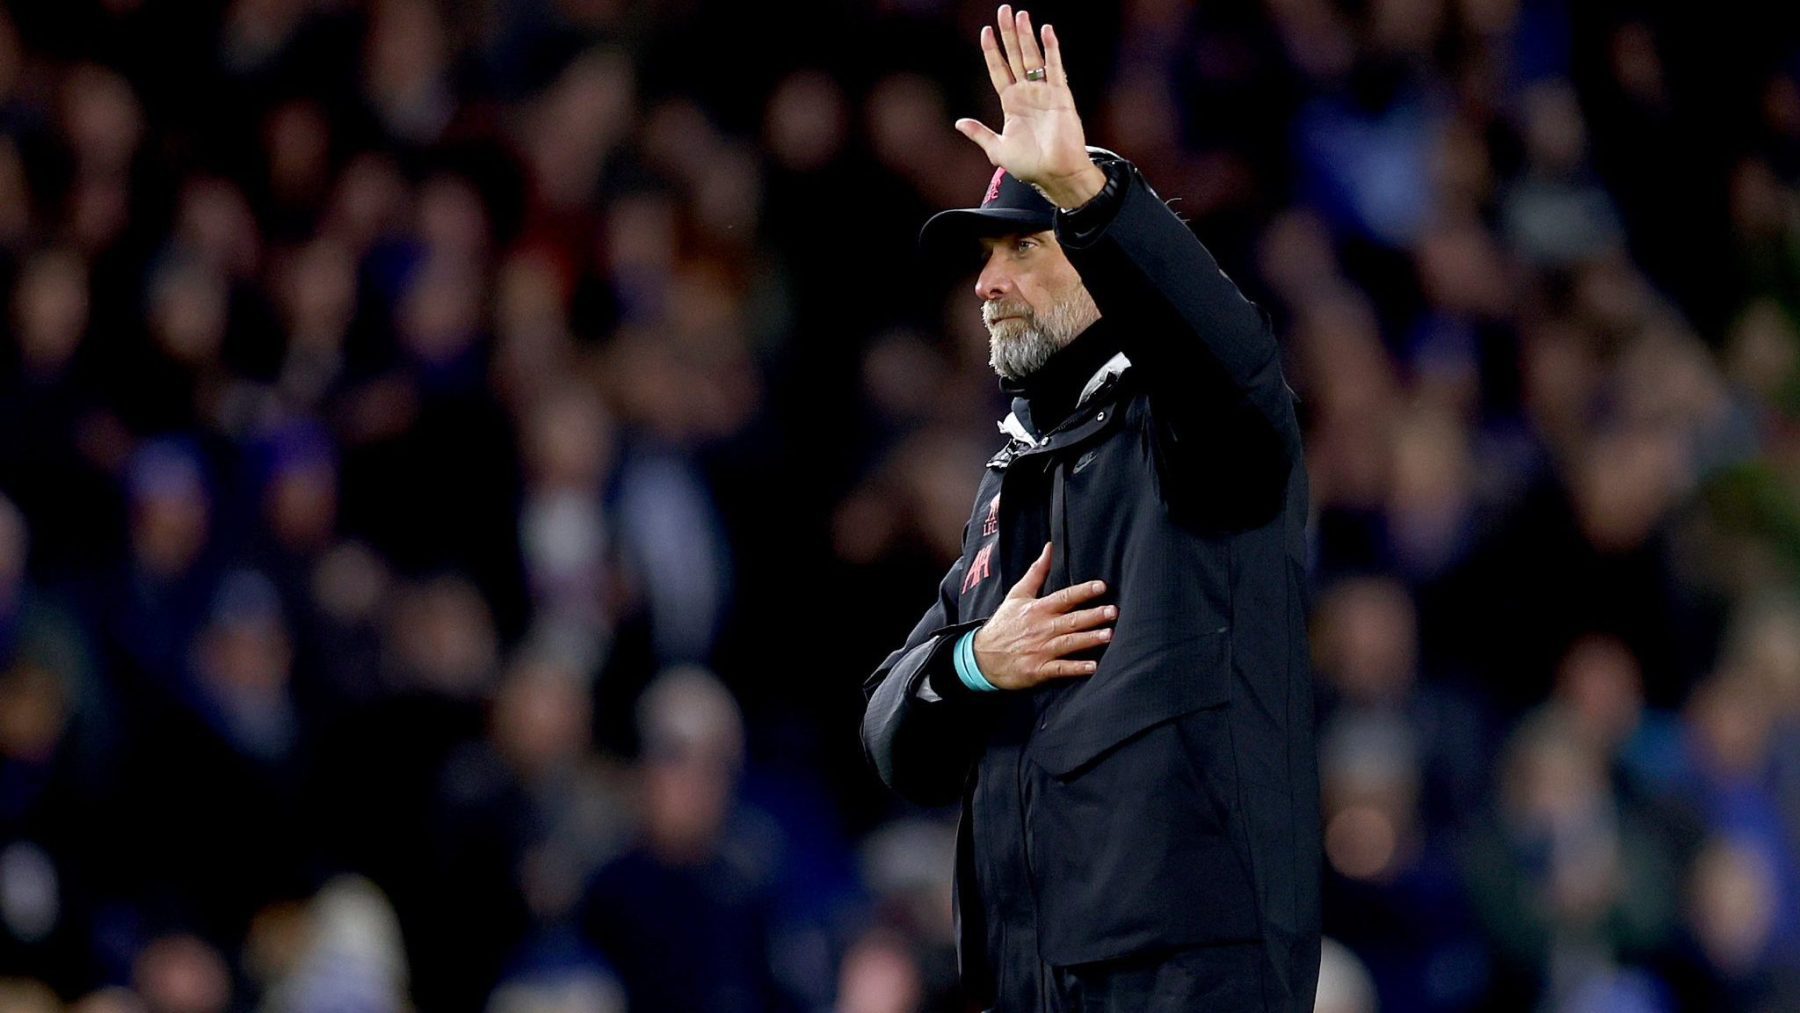 Jurgen Klopp waving to Liverpool fans 